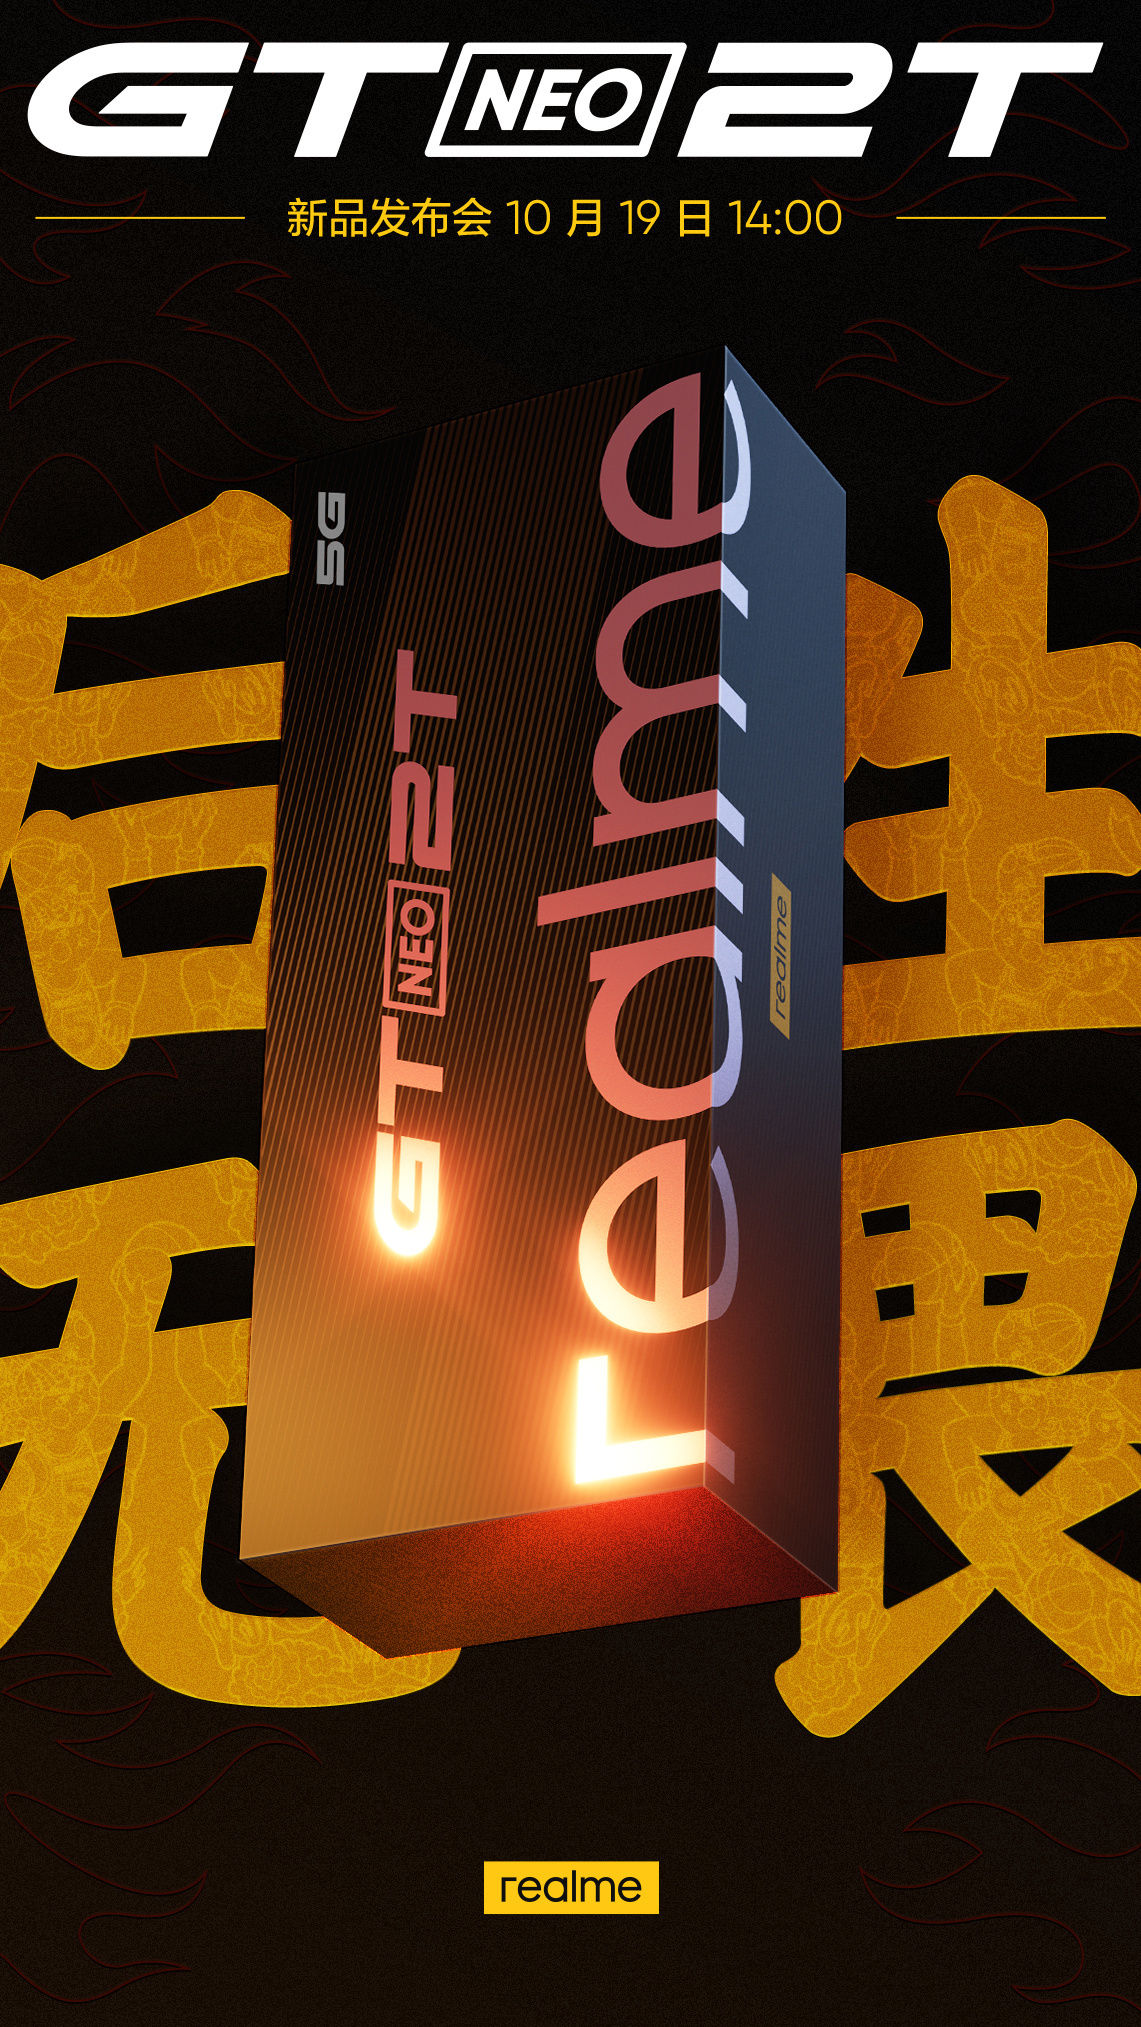 定制版|realme 真我 GT Neo2T 海报更新，删除“李宁设计”字样